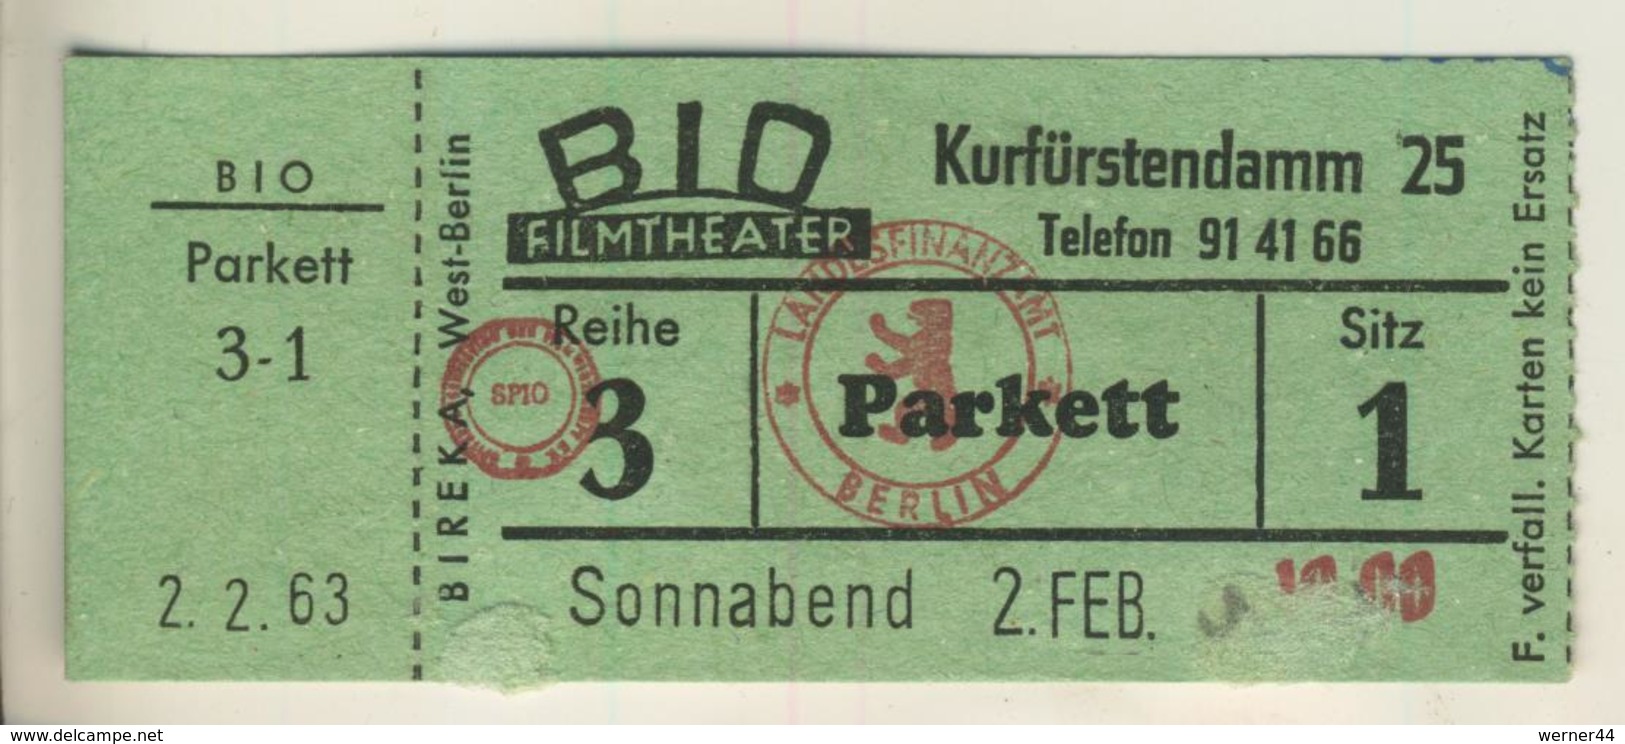 Berlin,Kurfürstendamm 25, Vom 2.2.1963  Eintrittskarte - BID Filmtheater  (53999-45) - Eintrittskarten